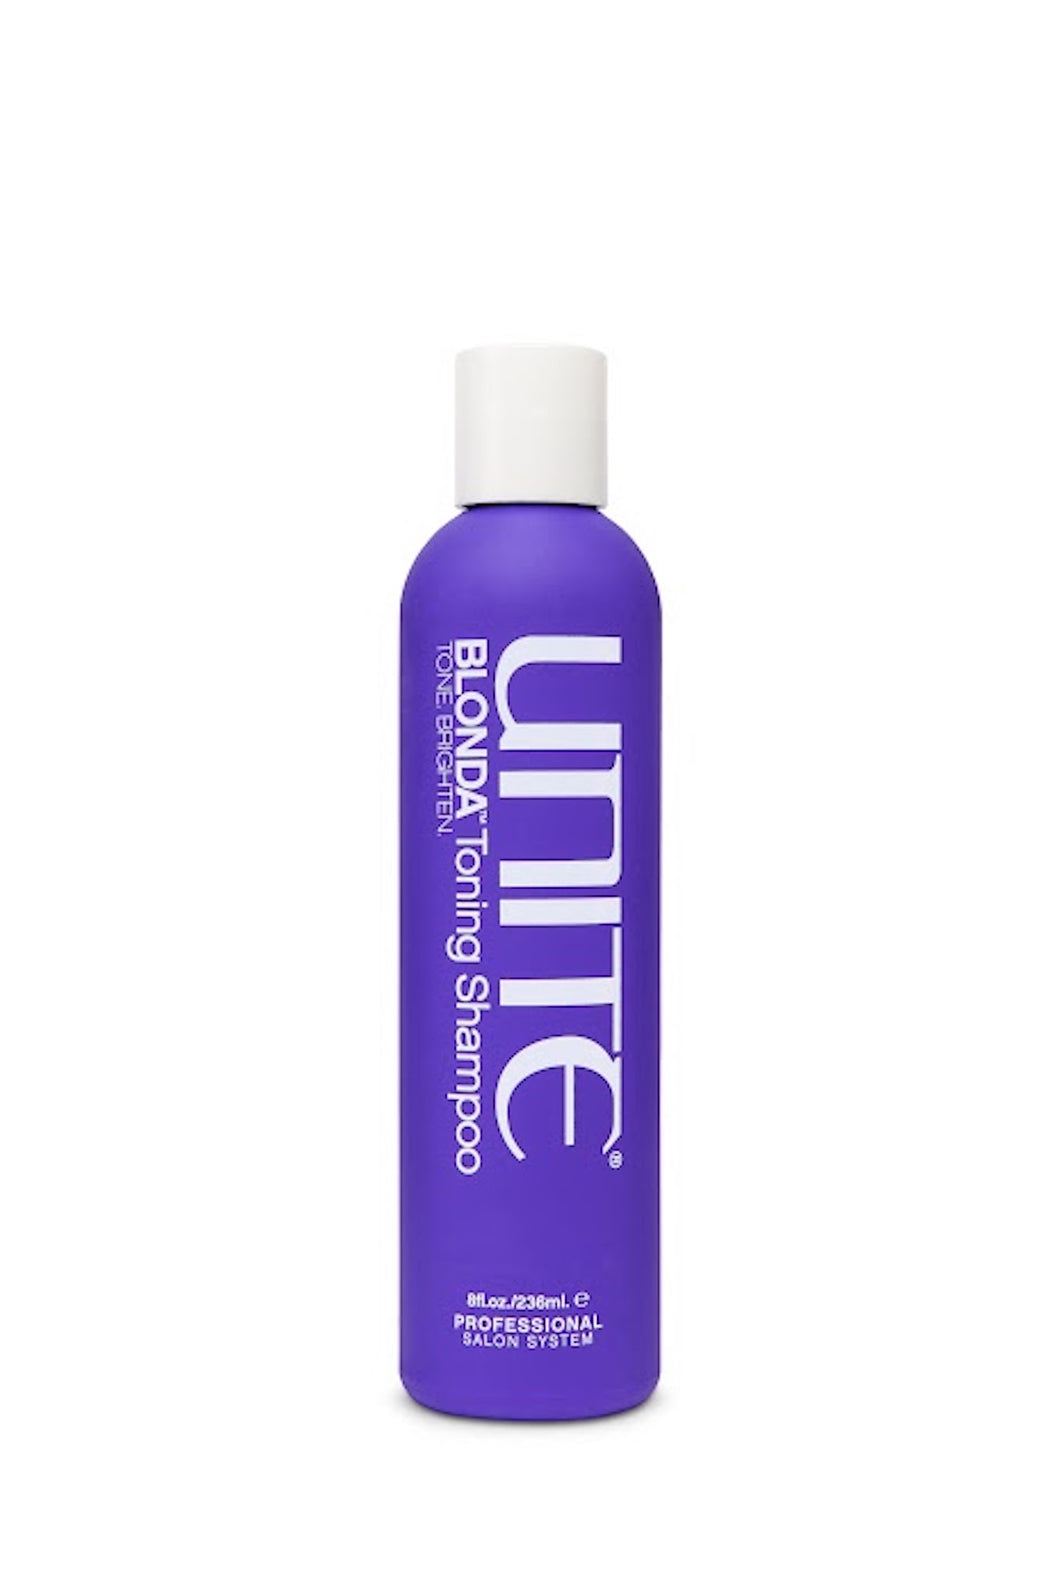 Unite - BLONDA Toning Shampoo purple bottle with white top 10 oz